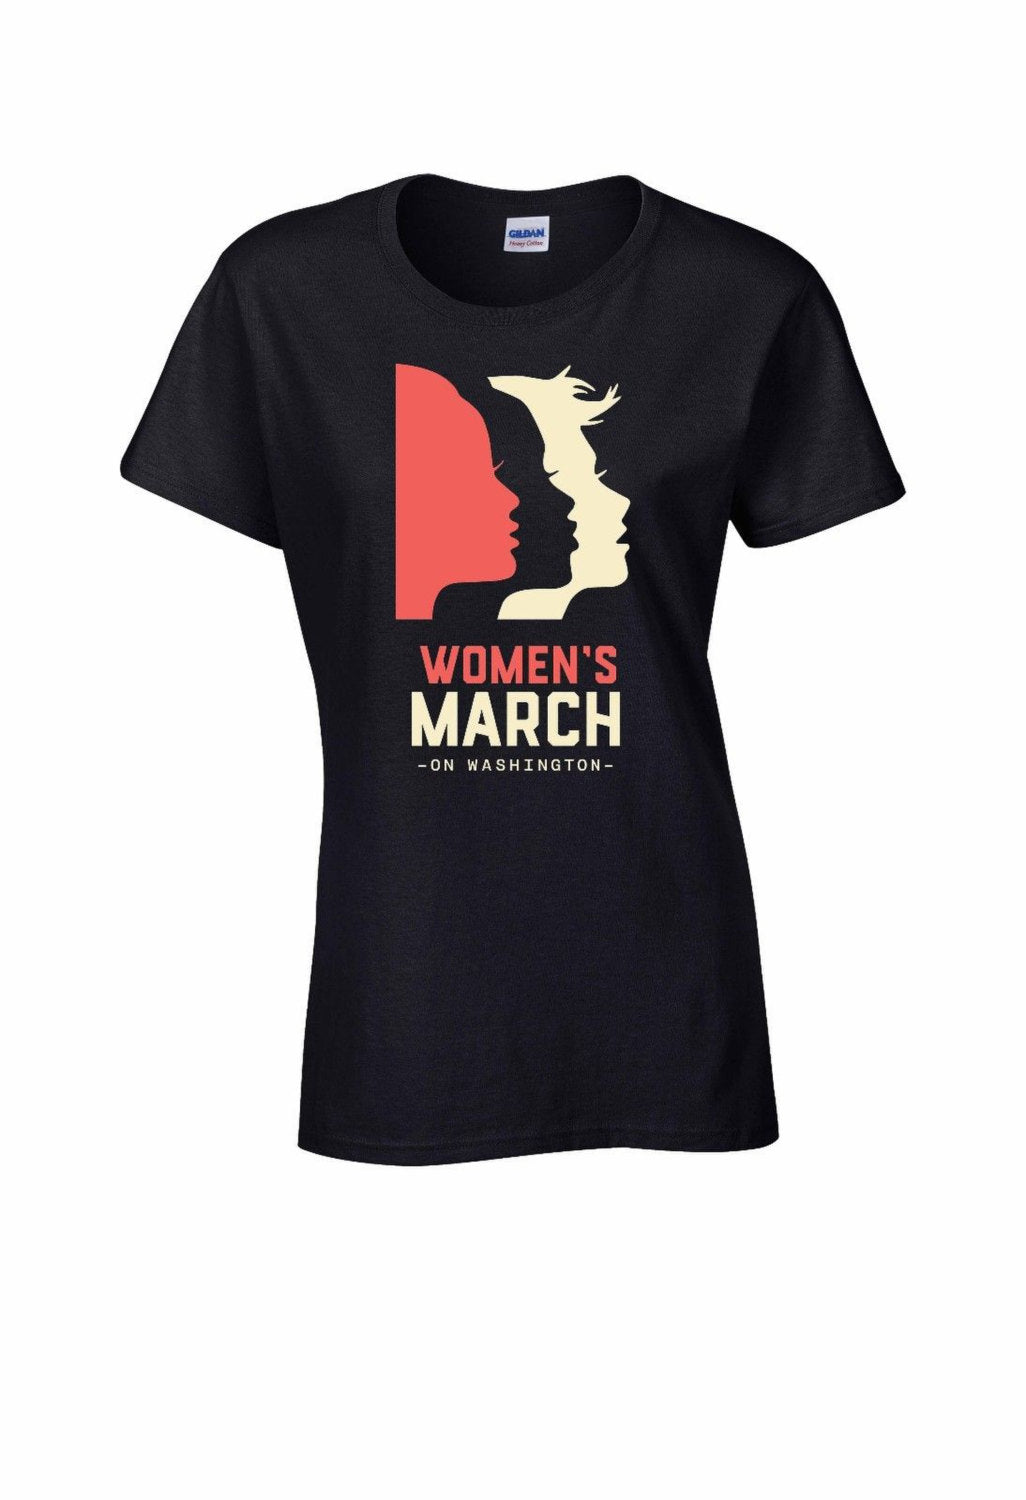 Women's March On Washington T-Shirt WOMEN BLACK Shirt